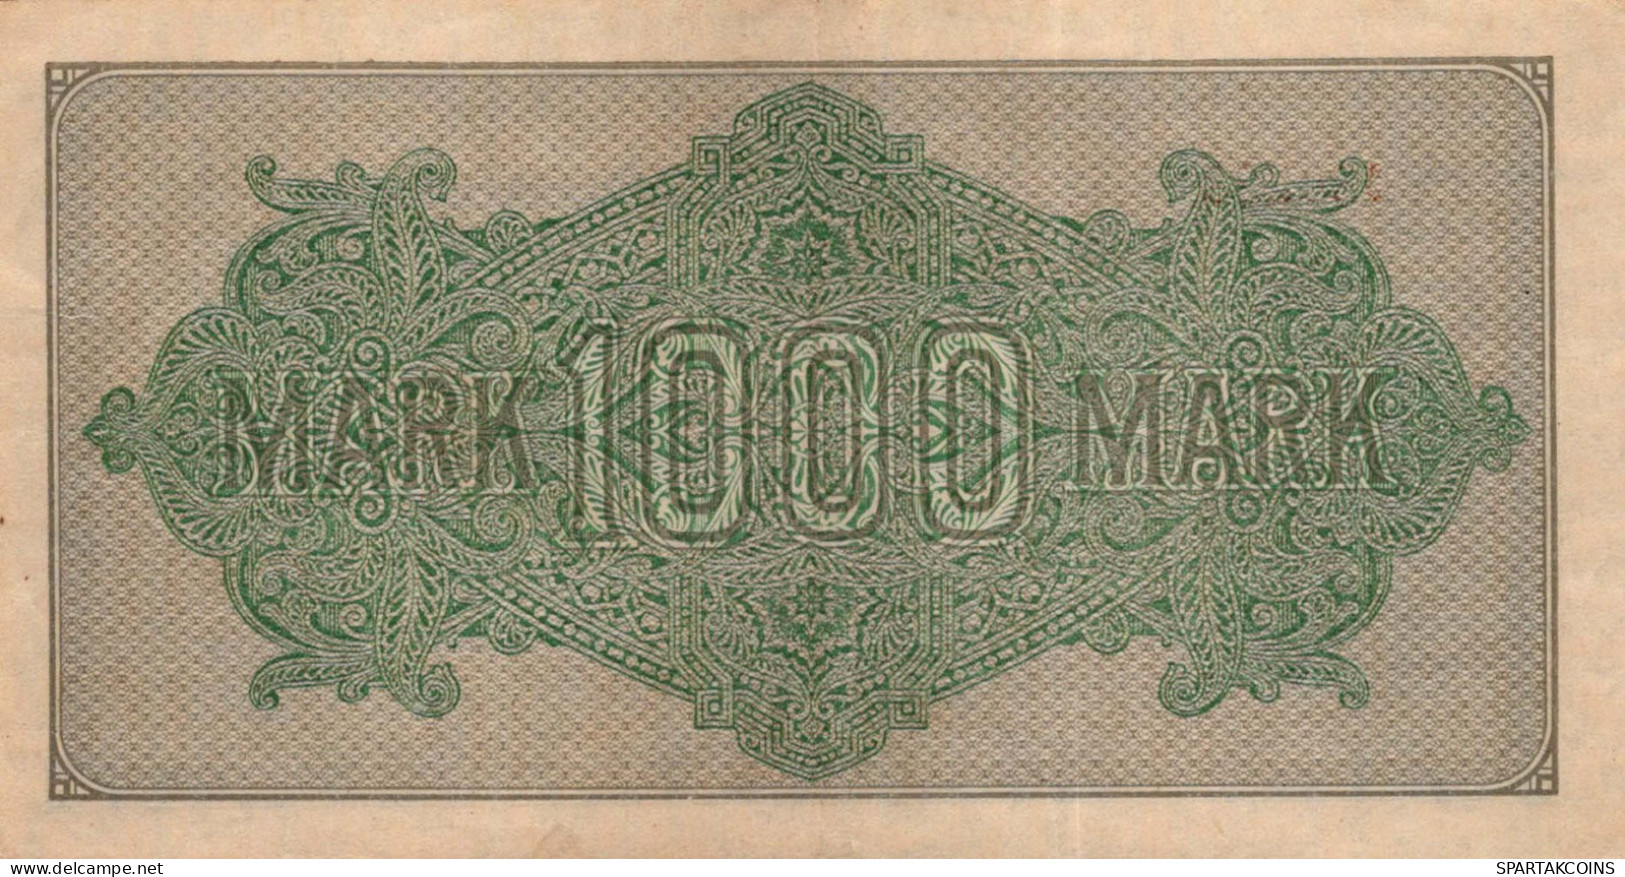 1000 MARK 1922 Stadt BERLIN DEUTSCHLAND Papiergeld Banknote #PL398 - [11] Emissioni Locali